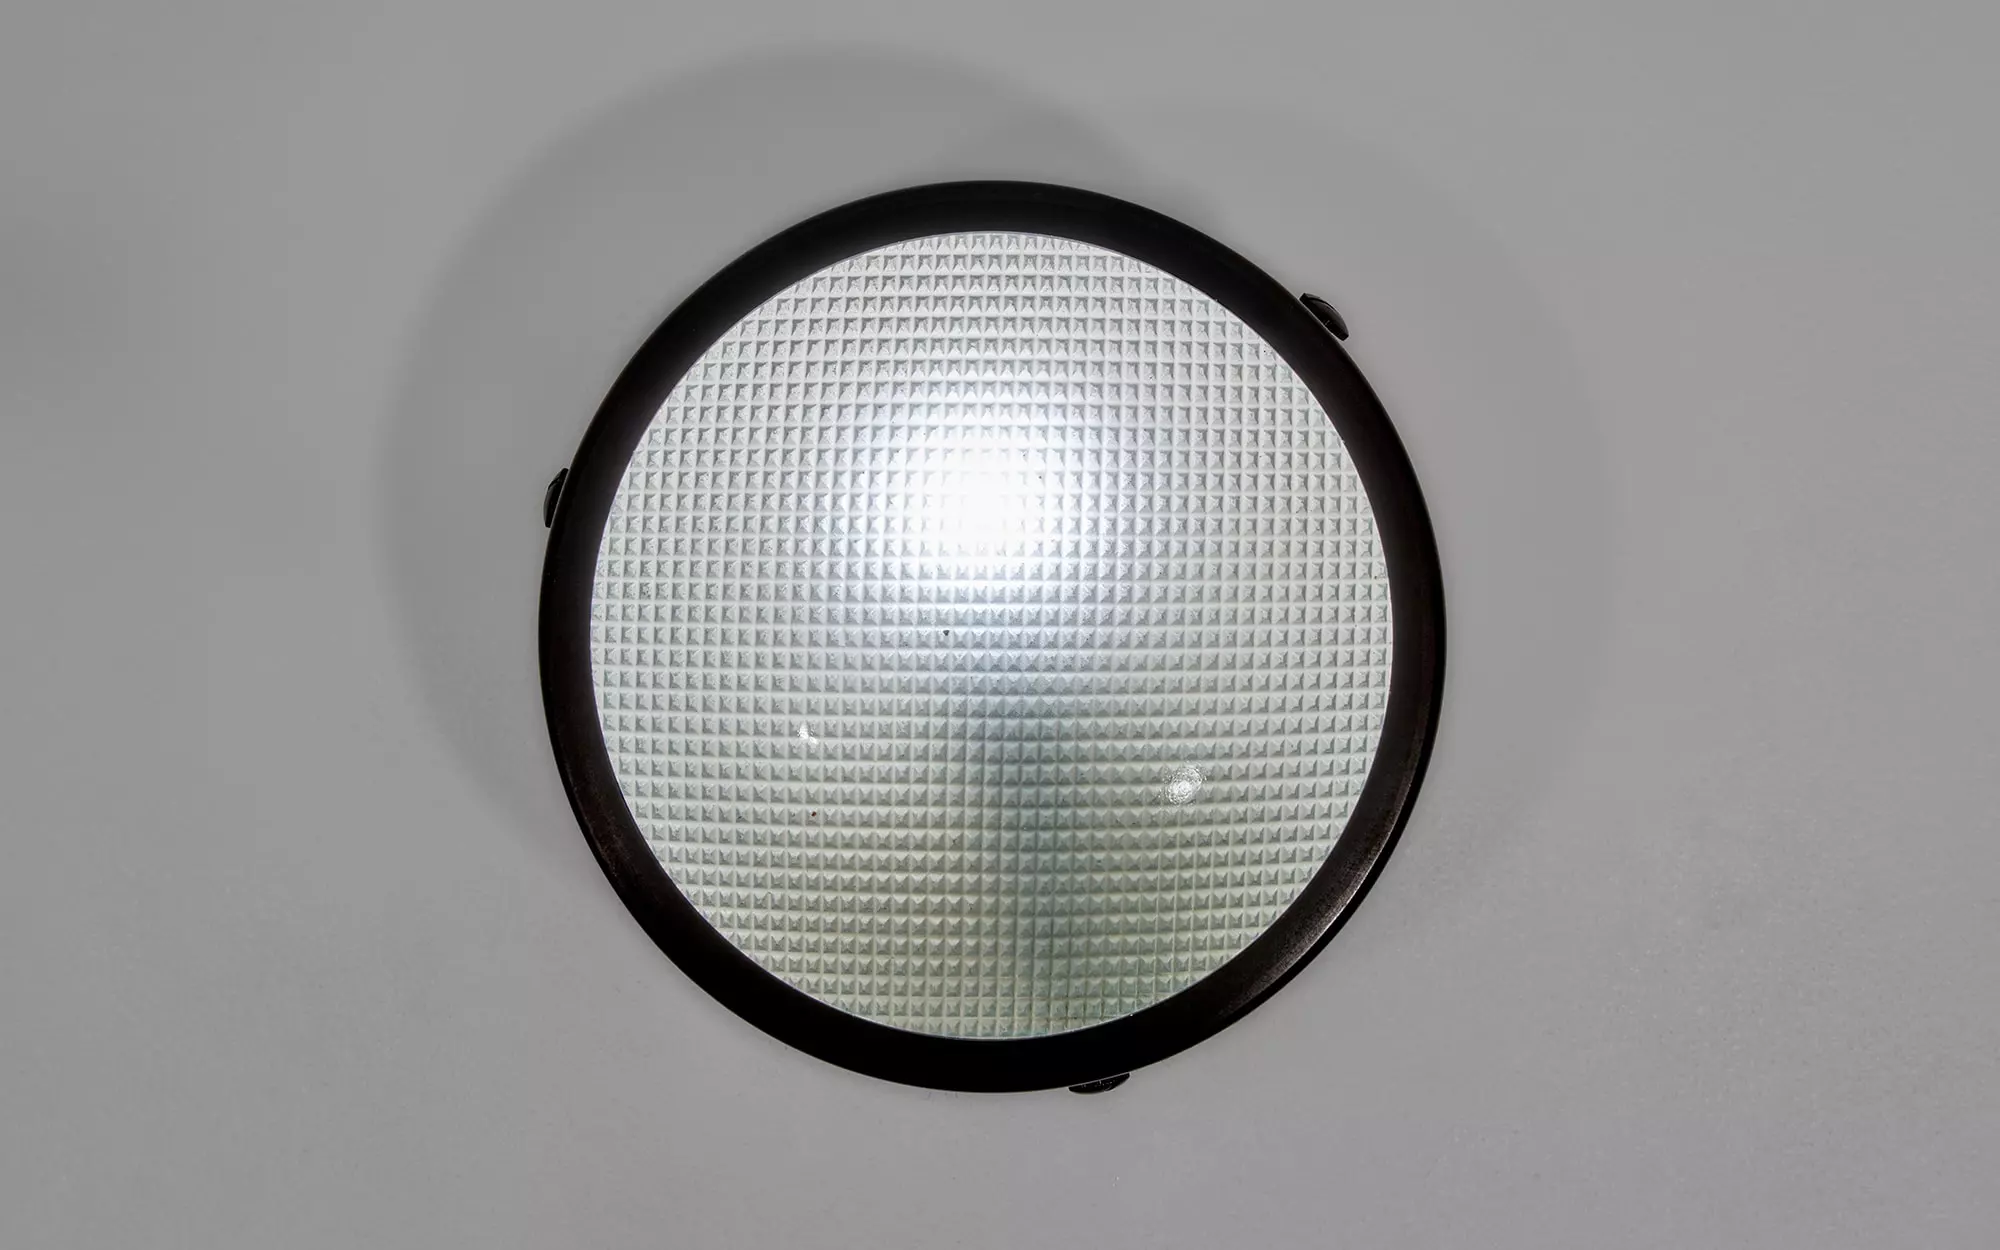 3001/16 - Gino Sarfatti - Pendant light - Galerie kreo